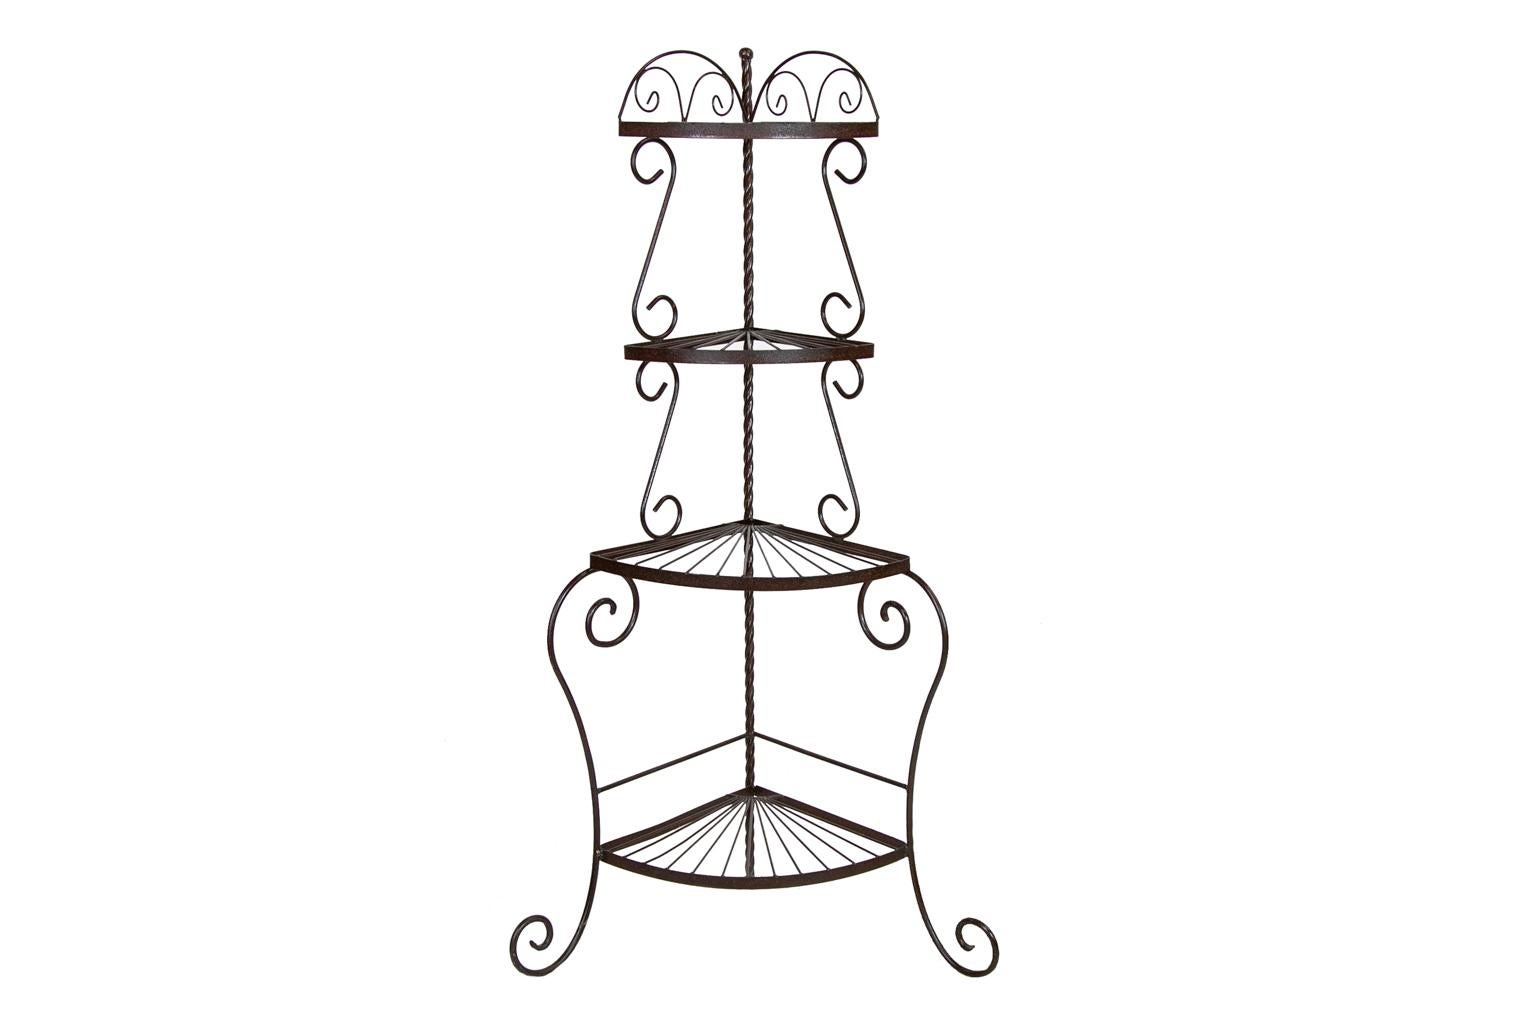 Dieses Eckregal aus Stahl verfügt über vier fächerförmige Ablagen, die von rollenförmigen Stützen getragen werden. Der hintere Eckpfosten hat die Form eines spiralförmigen Gerstenknotens.
   